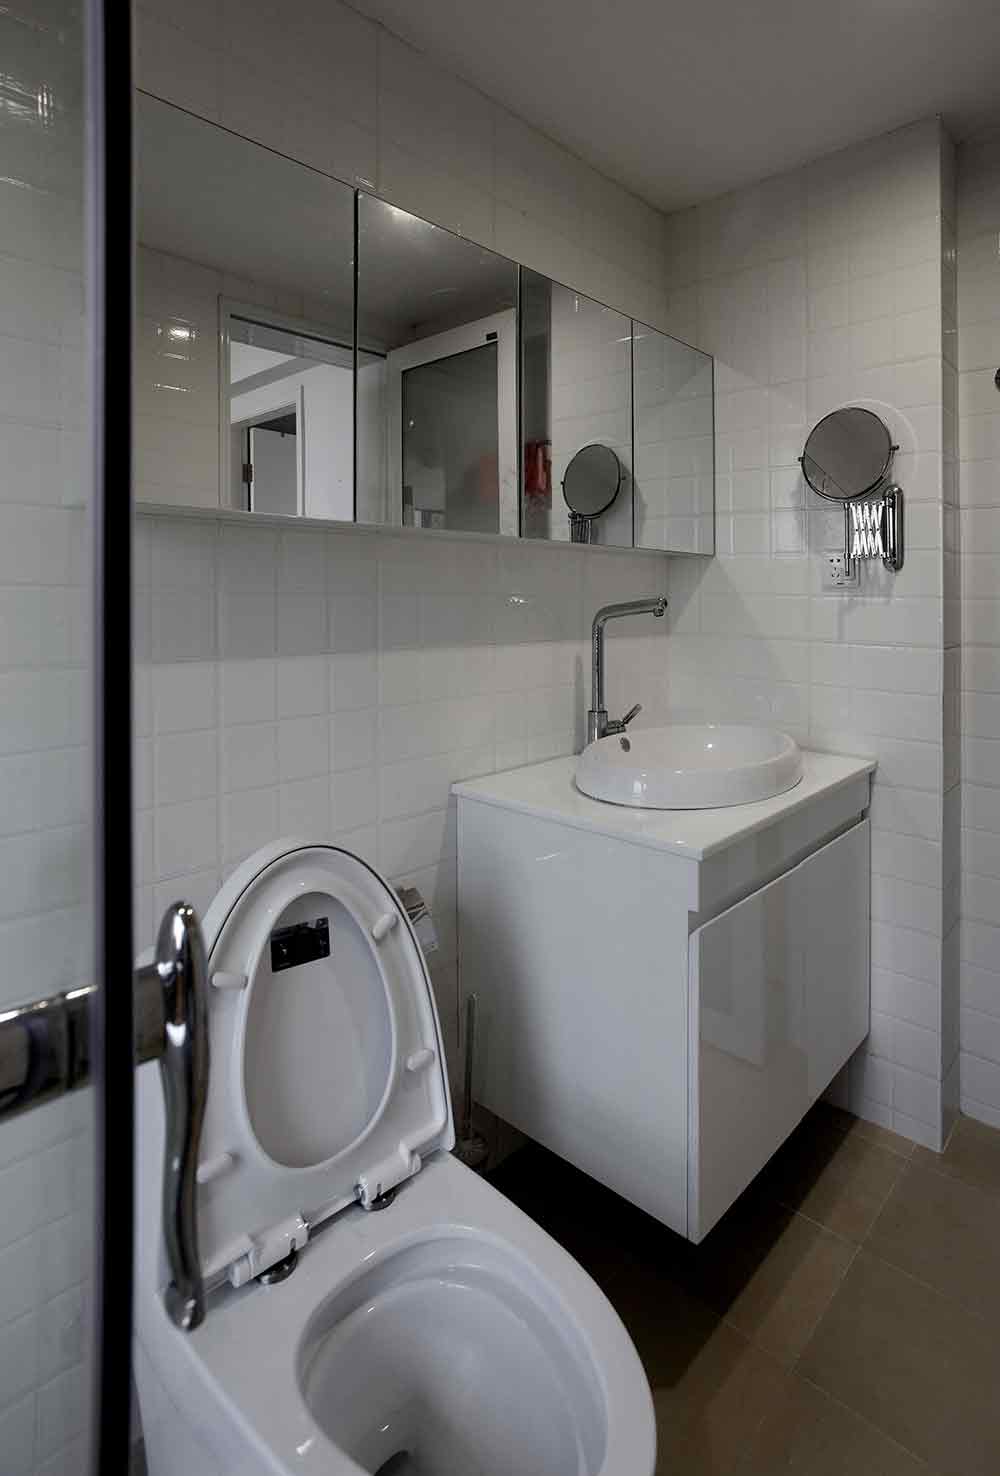 卫生间墙面以白色小方格瓷砖铺贴，清新可爱。拉长的镜面放大了空间感。